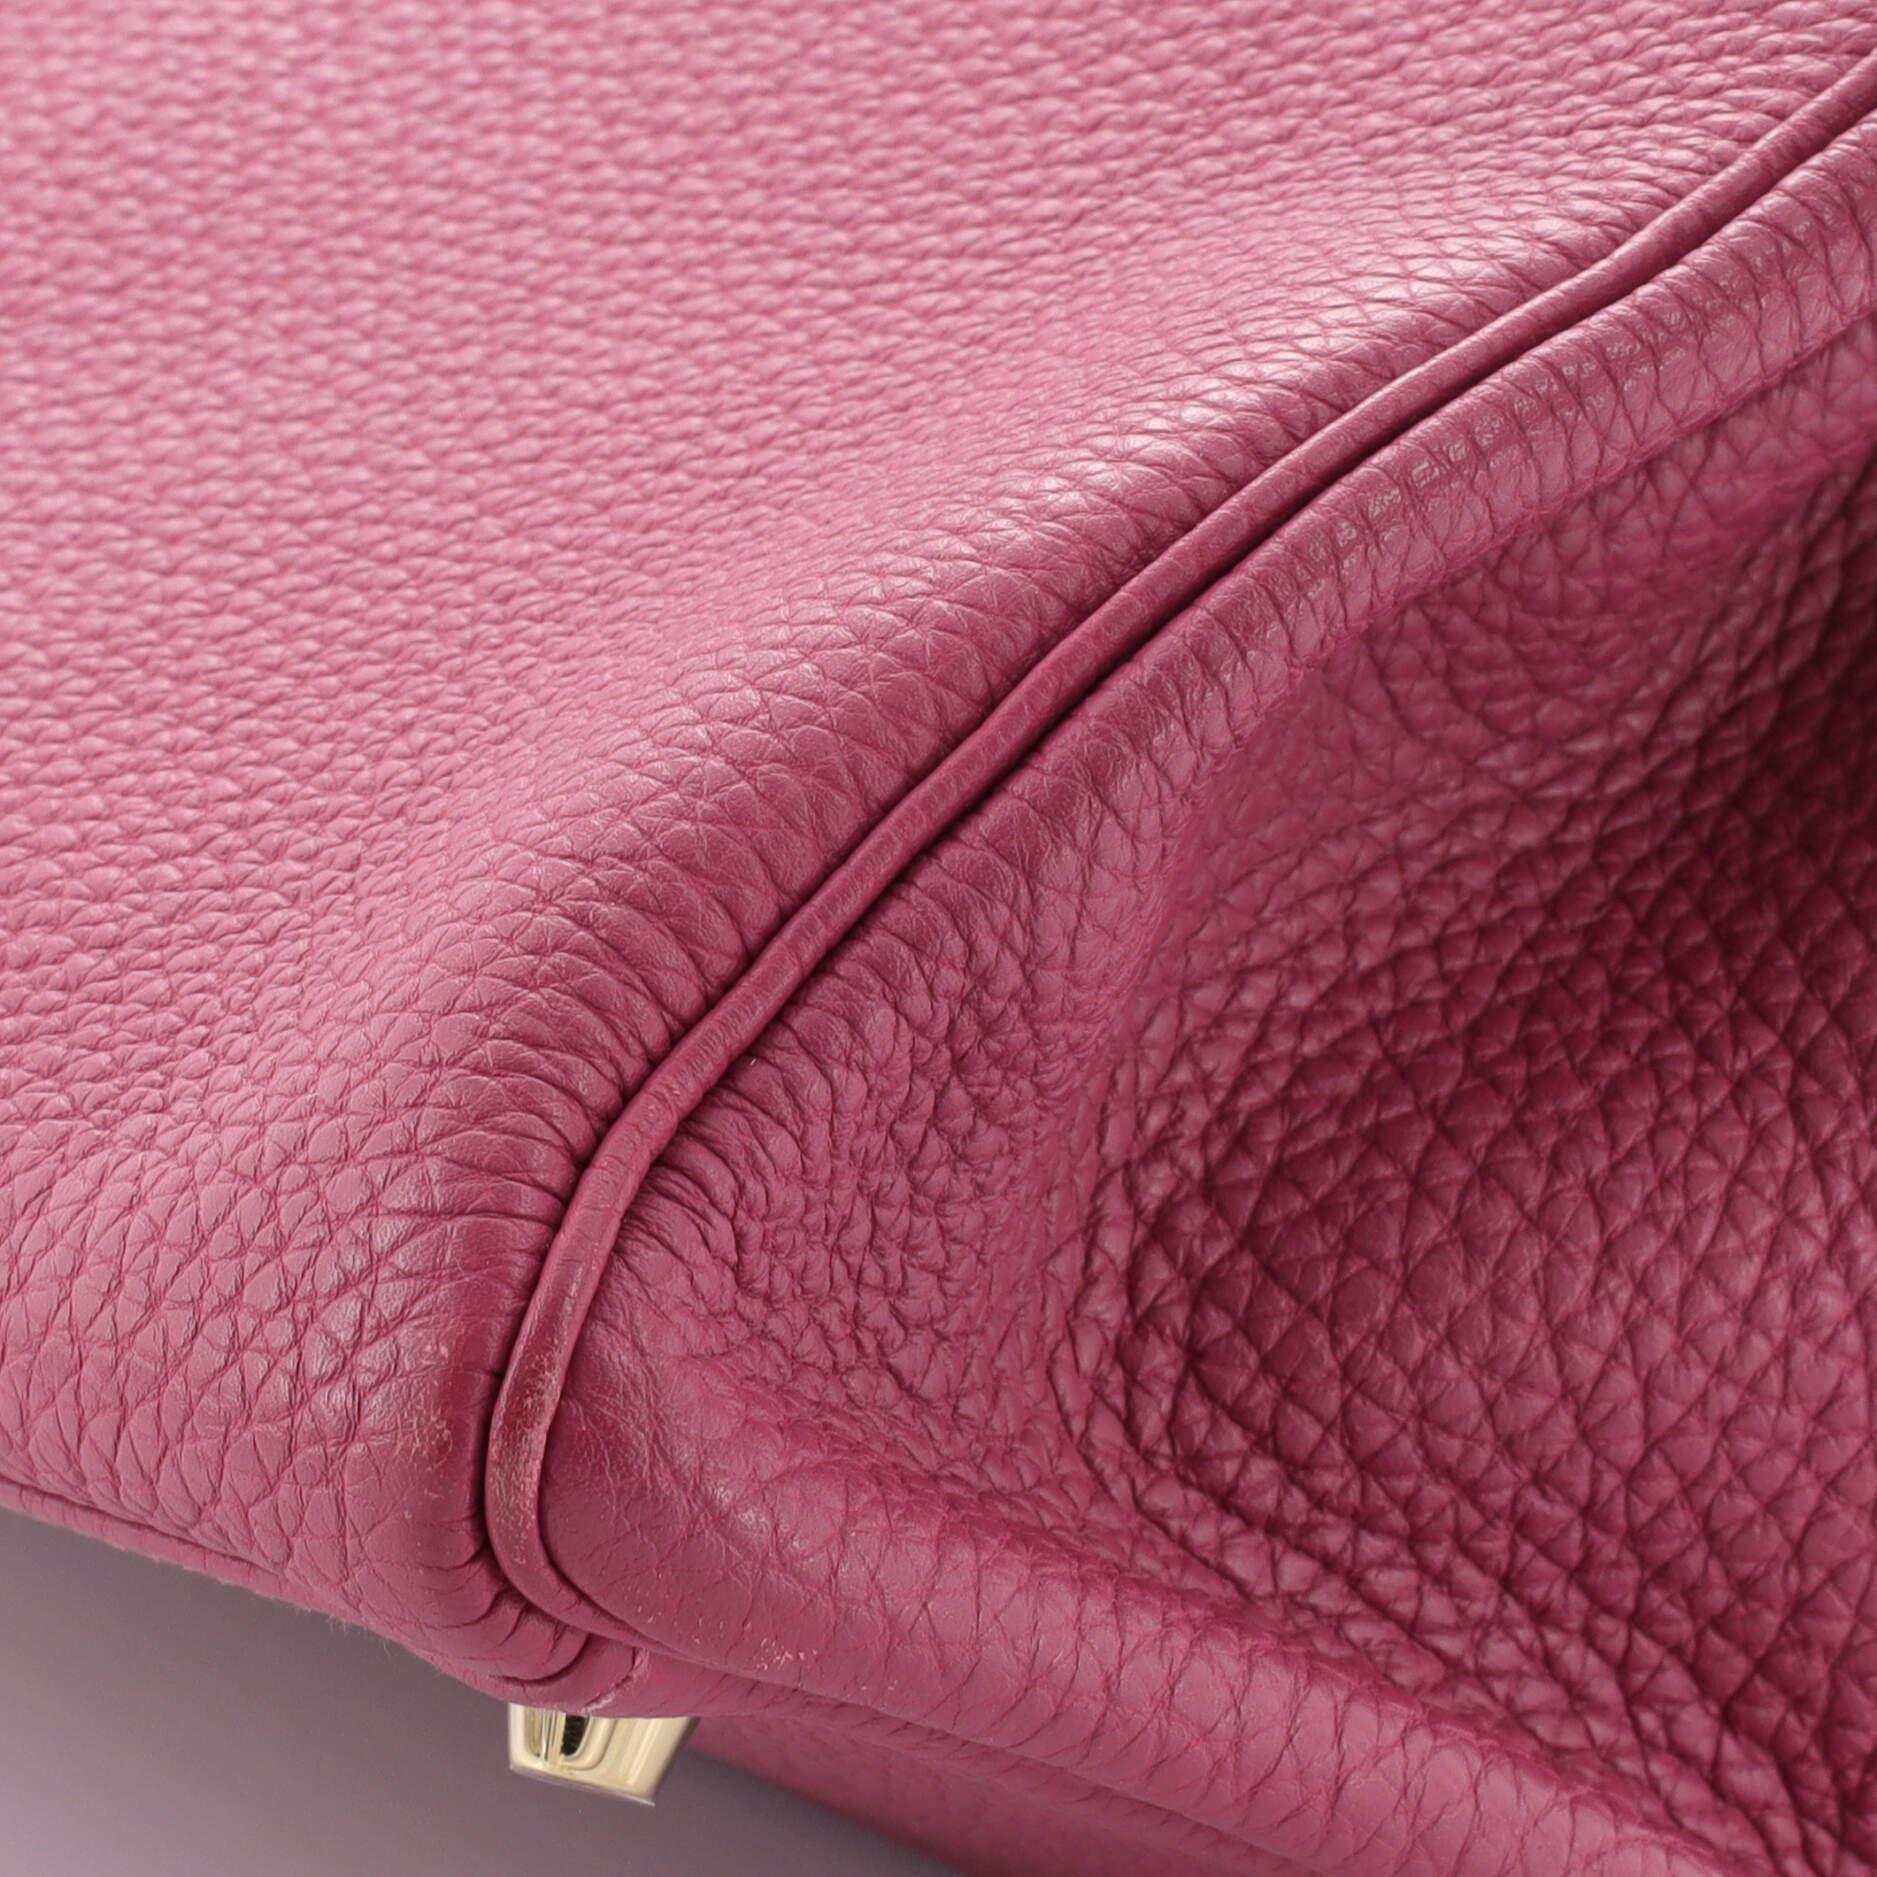 Hermes Kelly Handbag Tosca Togo With Gold Hardware 35 For Sale 6